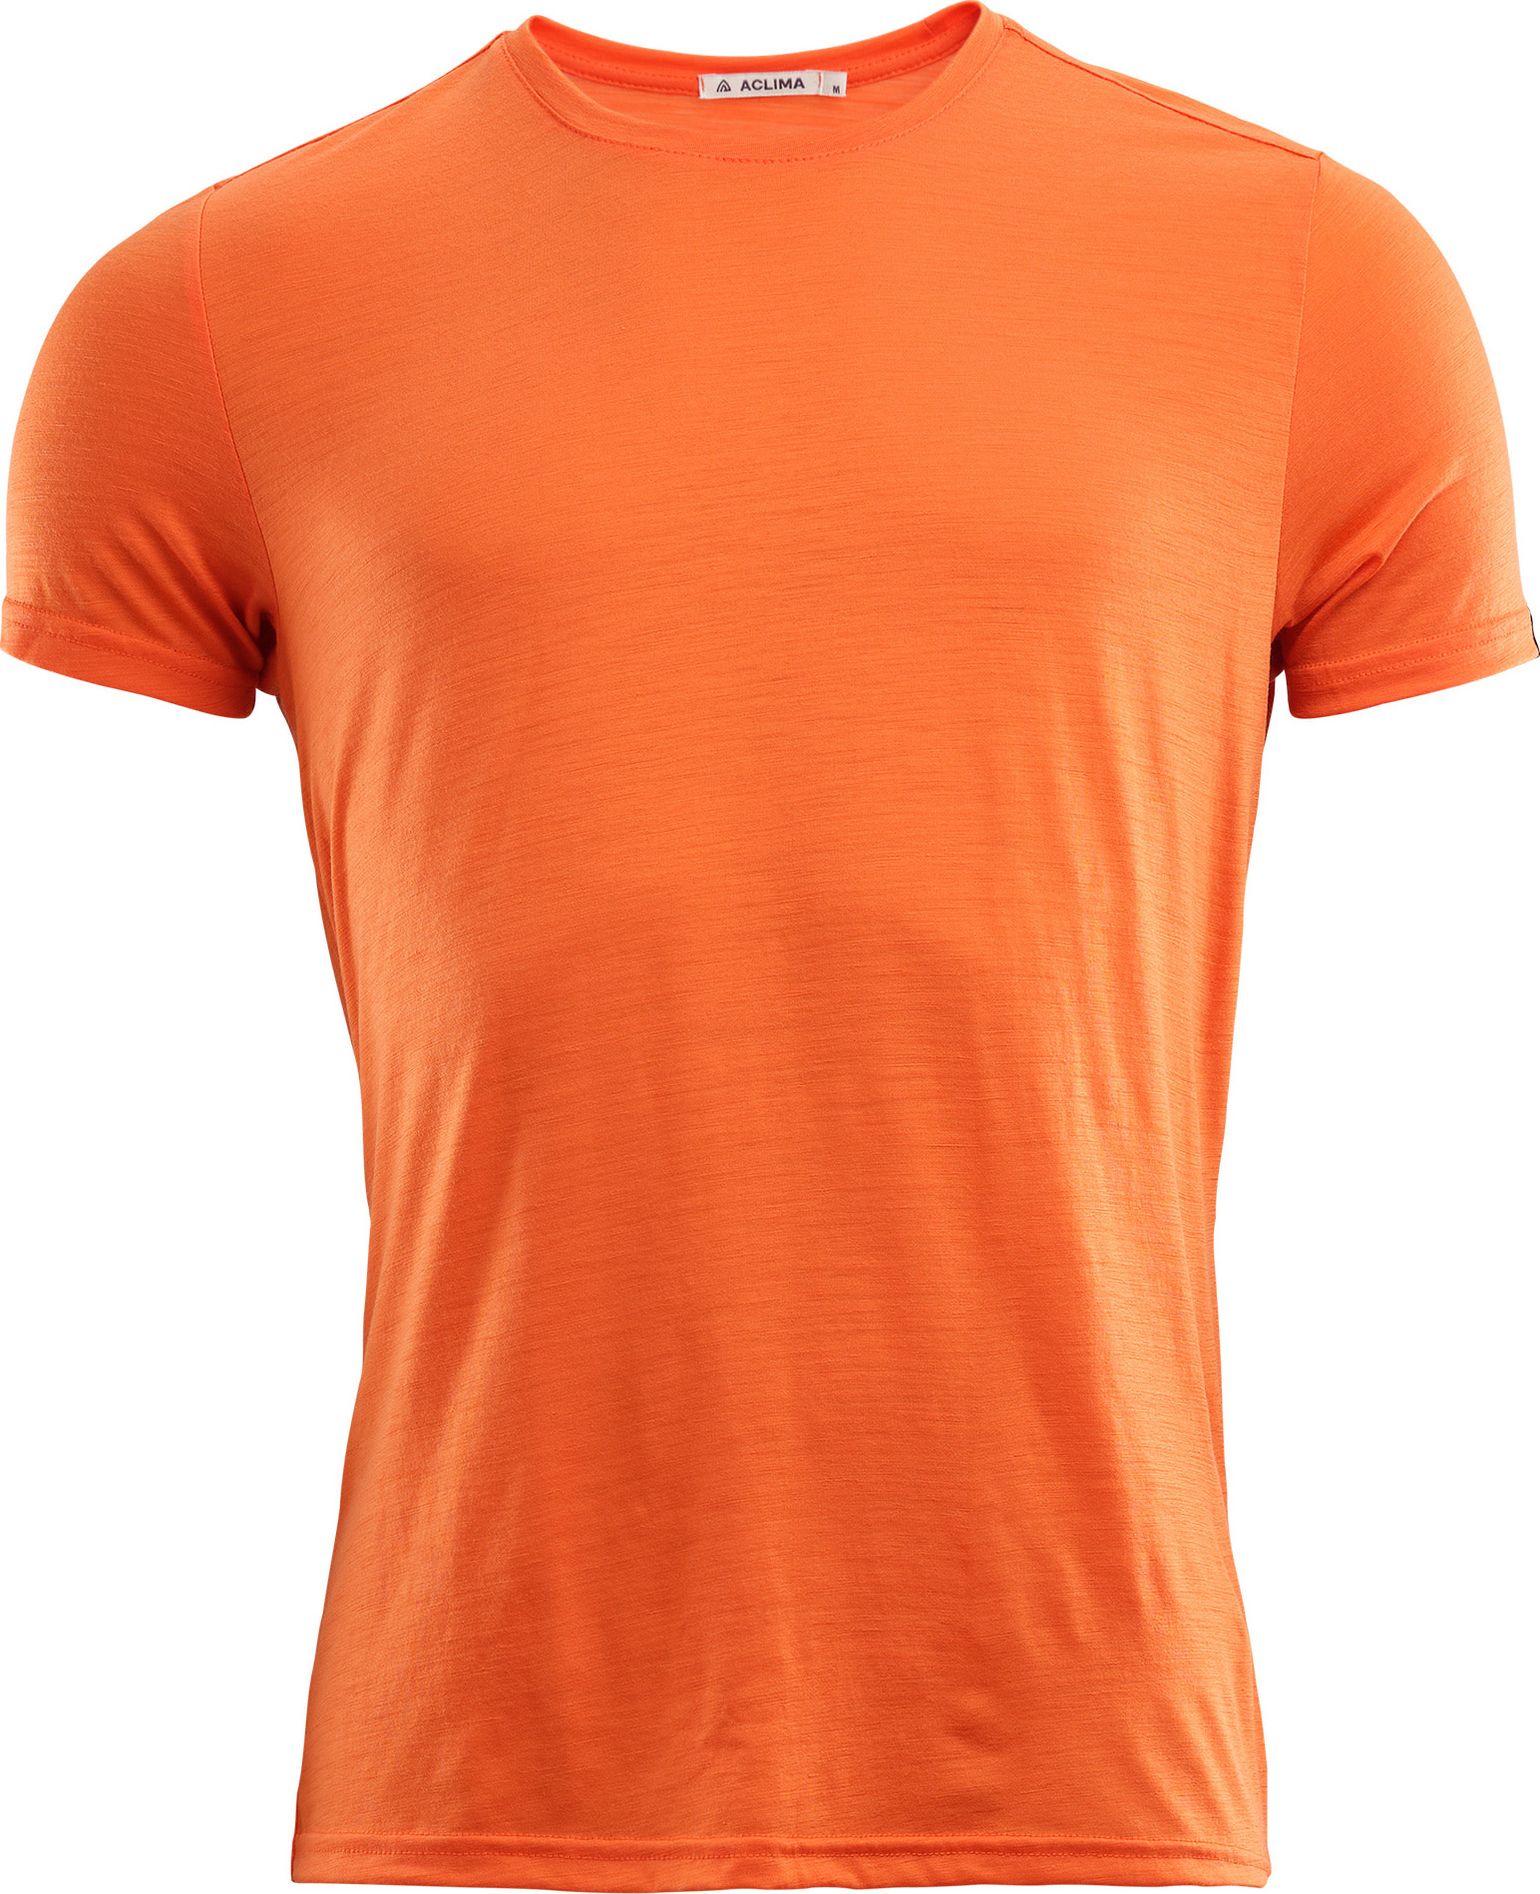 Aclima Men's LightWool T-shirt Round Neck Orange Tiger